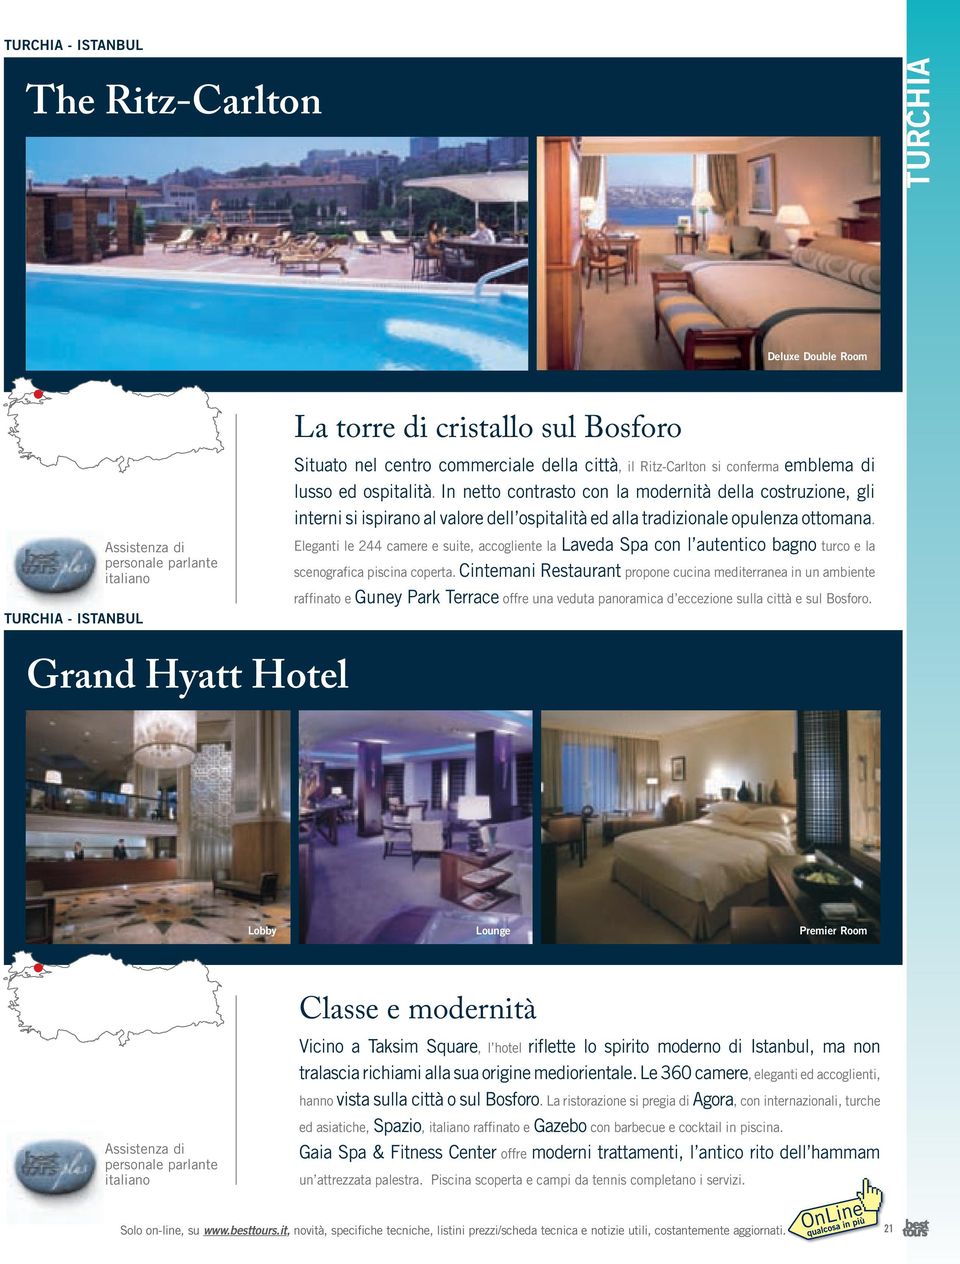 - istanbul Eleganti le 244 camere e suite, accogliente la Laveda Spa con l autentico bagno turco e la scenografica piscina coperta.